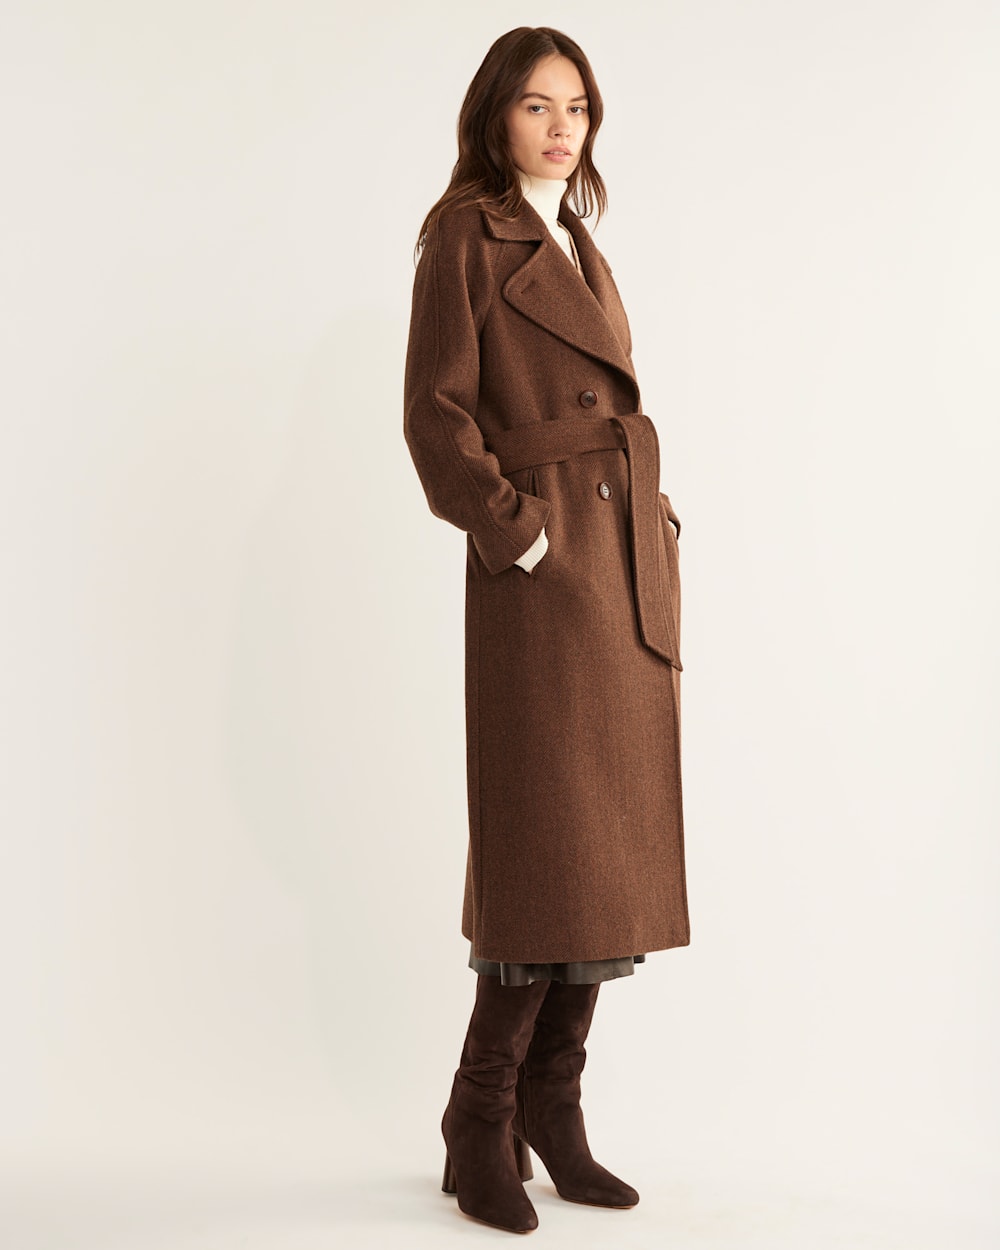 ALTERNATE VIEW OF WOMEN'S UPTOWN LONG WOOL COAT IN BROWN/CHARCOAL HERRINGBONE image number 2